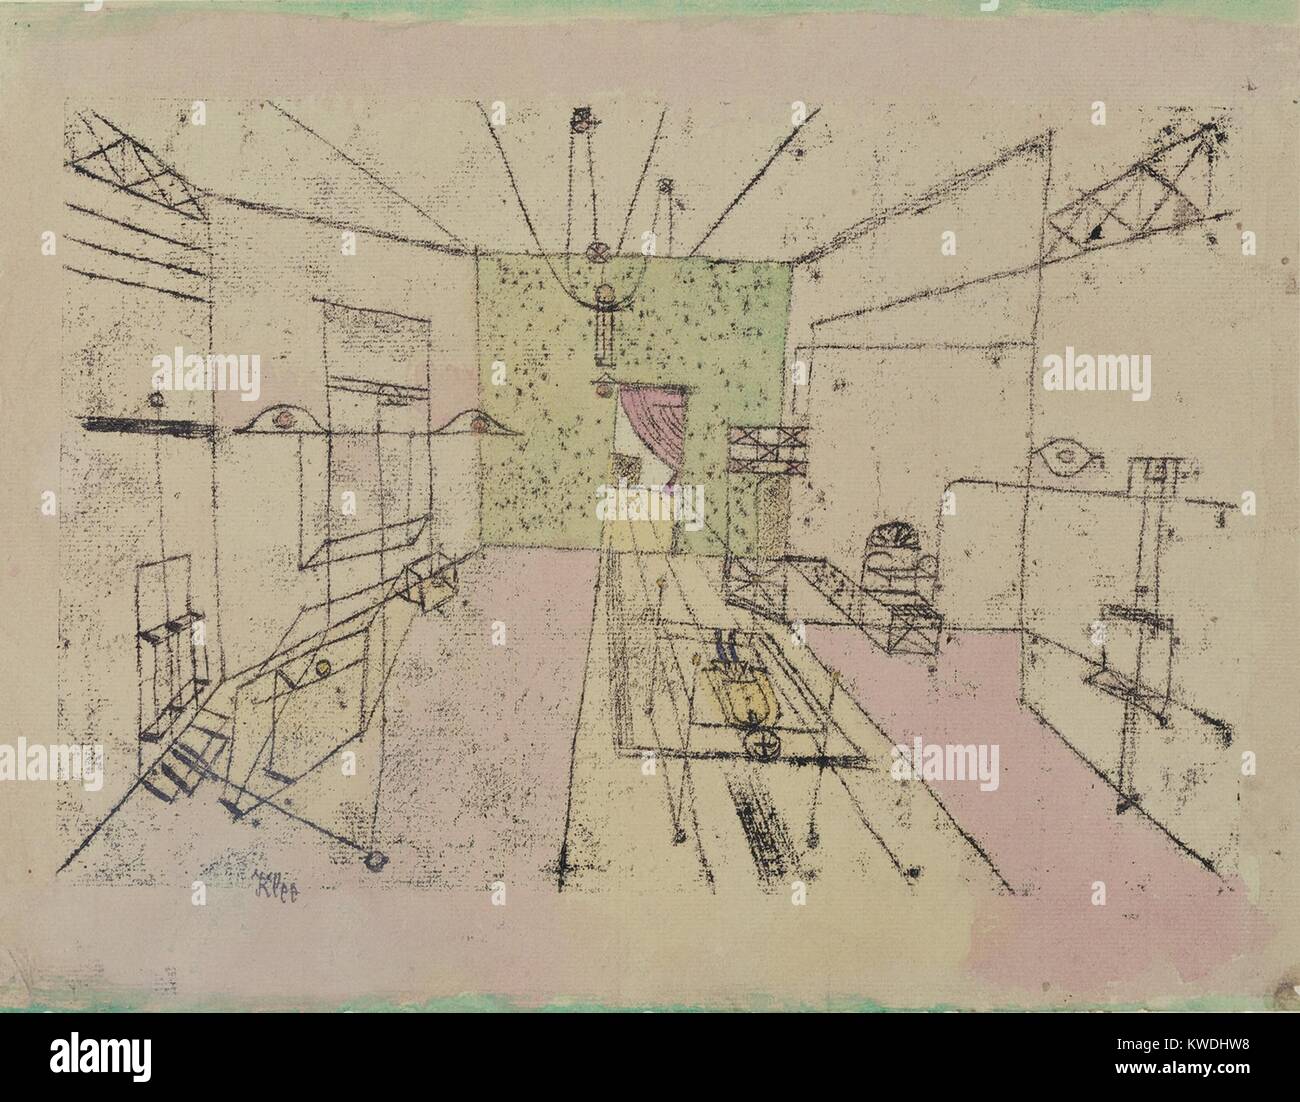 Prospettiva fantasma di Paul Klee, 1920, Swiss disegno, acquarello e inchiostro su carta. Disegno della linea crea l'illusione di uno spazio interno, gli oggetti non identificabili. Un soggetto figura delimitata da rettangoli in prospettiva è sul pavimento (BSLOC 2017 7 48) Foto Stock